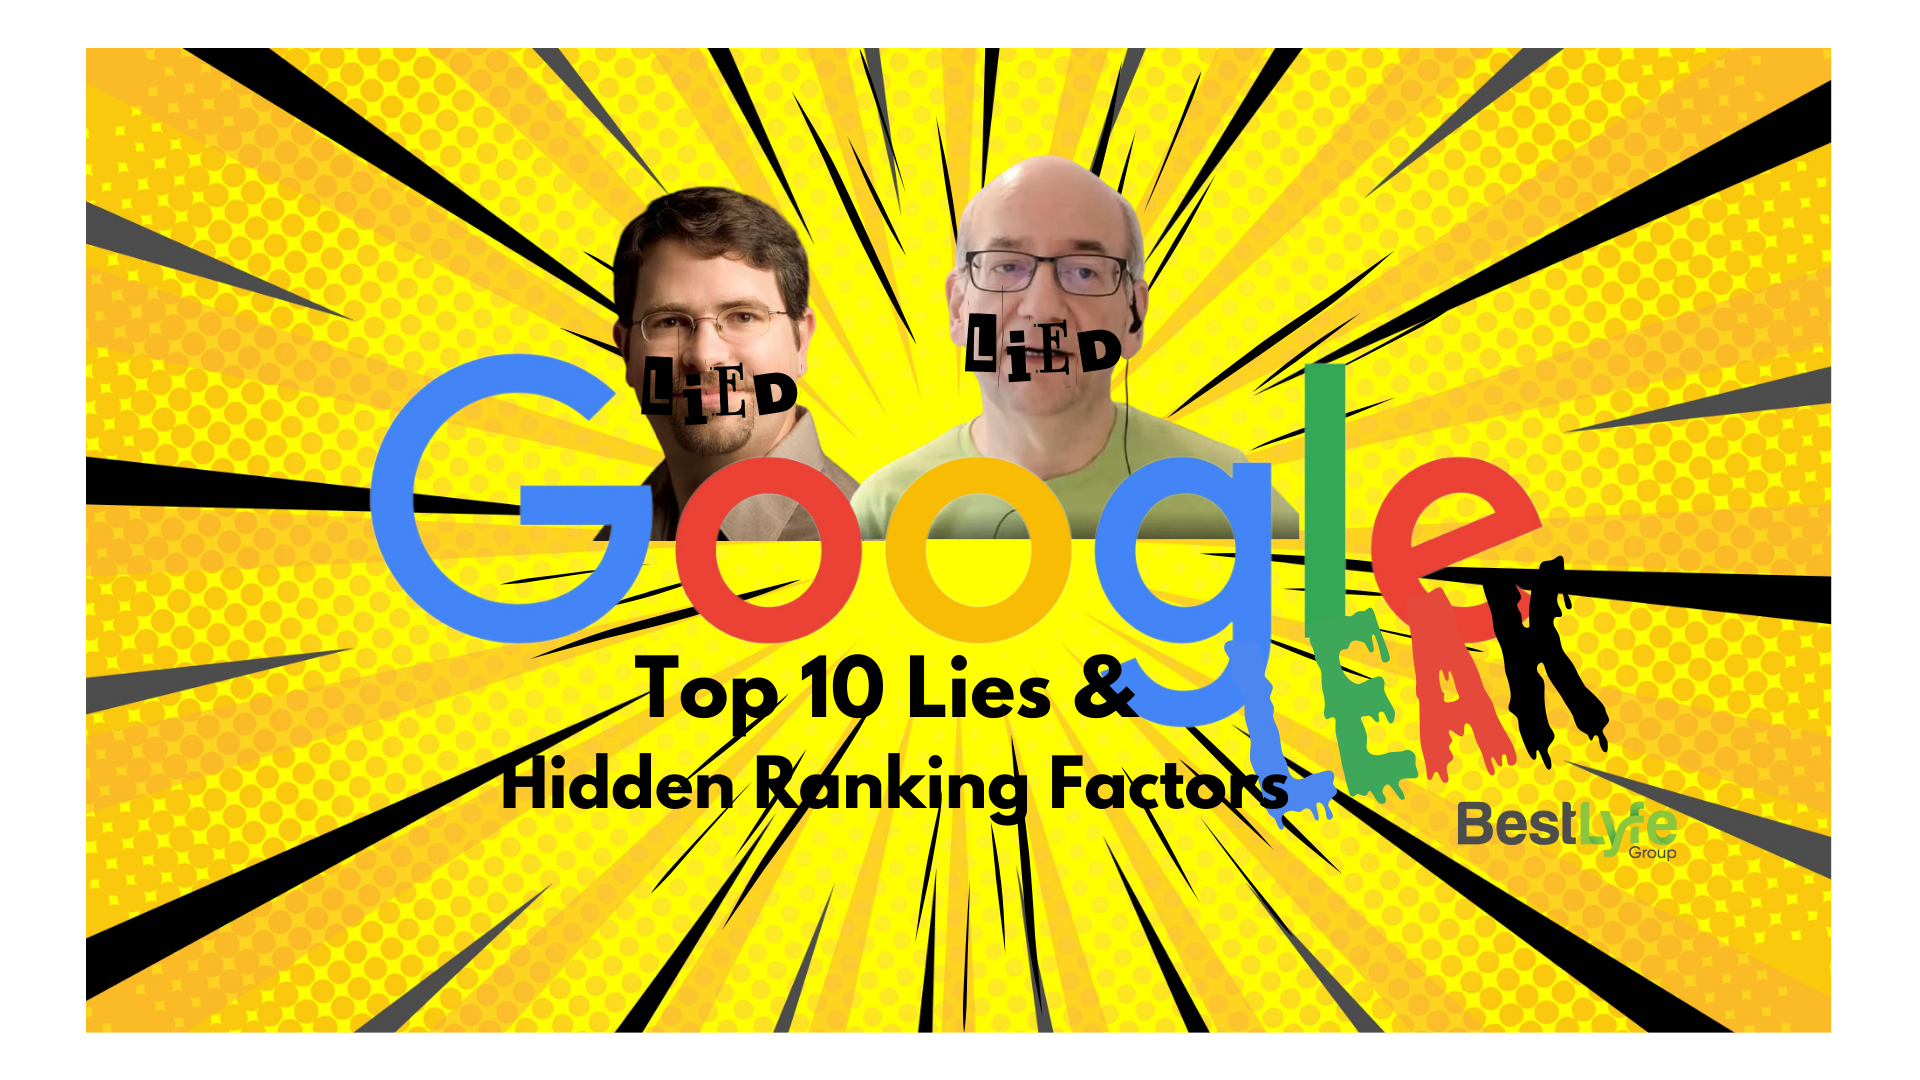 Google Leak: Top 10 Lies and Hidden Ranking Factors